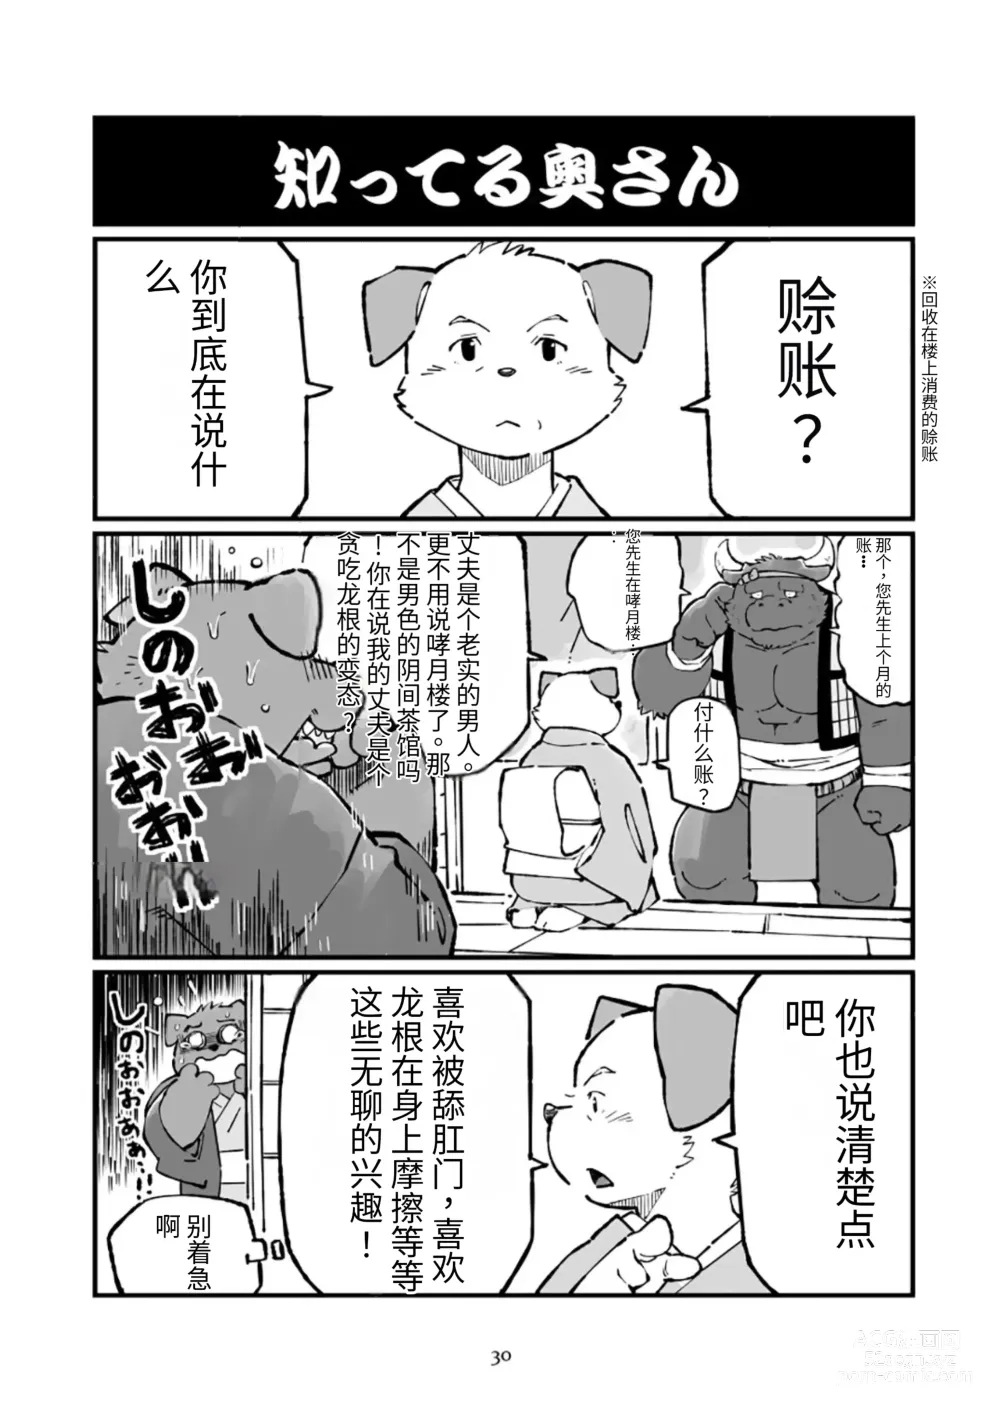 Page 30 of doujinshi 狗津原细见